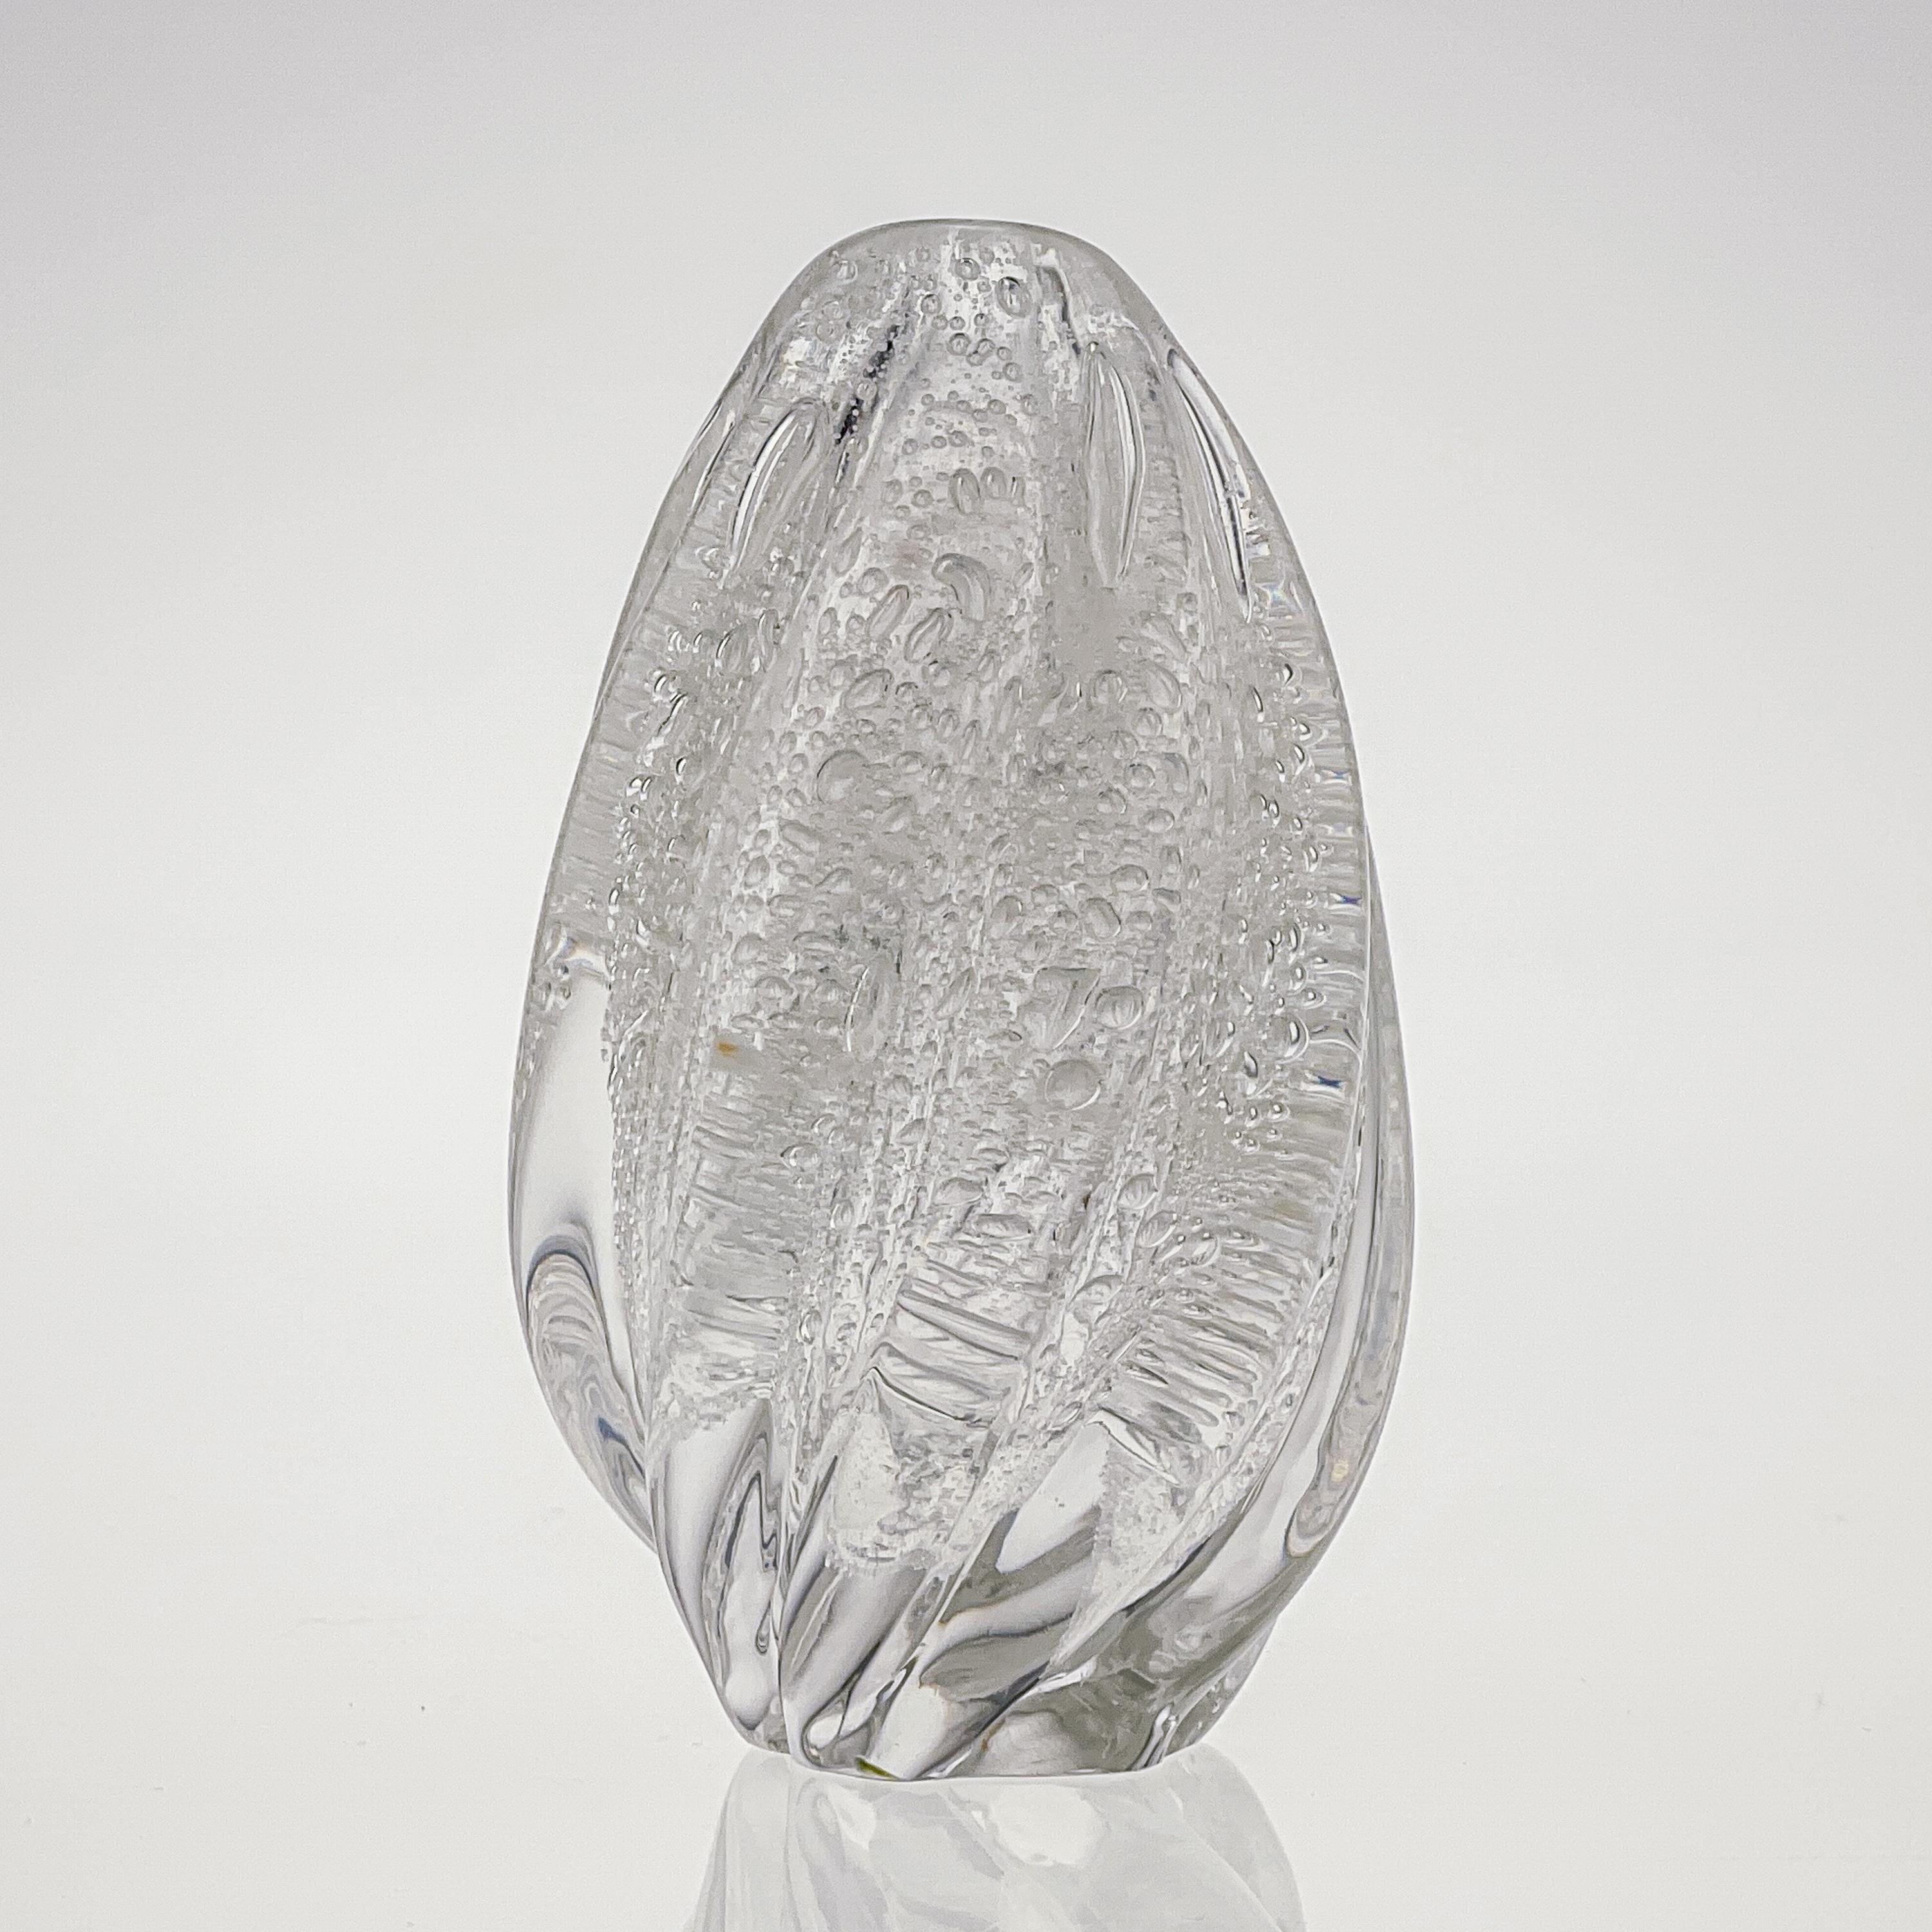 Scandinavian Modern Tapio Wirkkala Crystal Glass Art Vase Handblown Iittala 1948 1